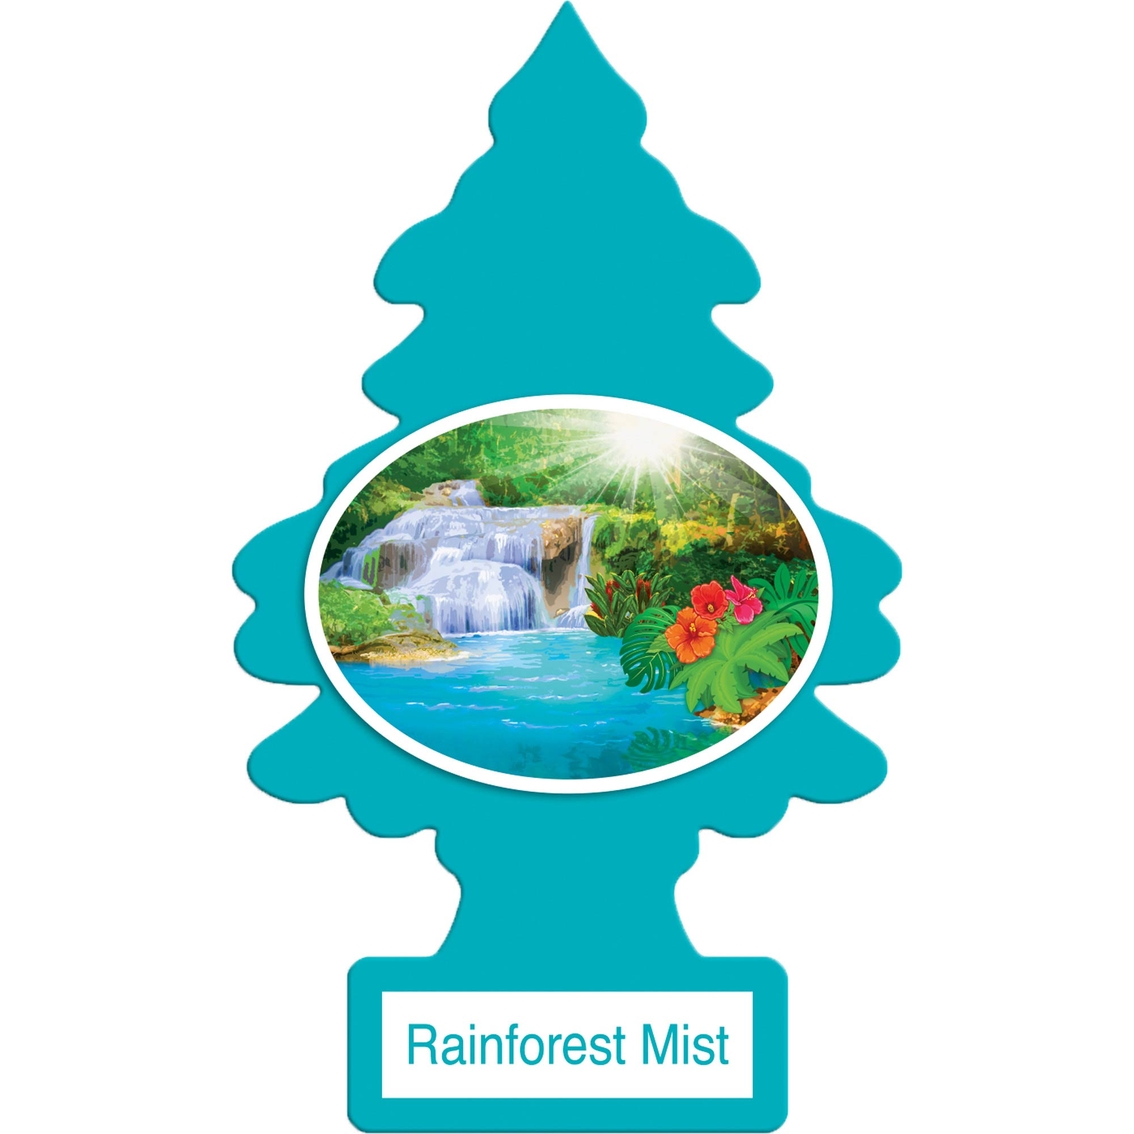 Little Tree Rainforest Mist Air Freshener 3 pk. - Image 2 of 3